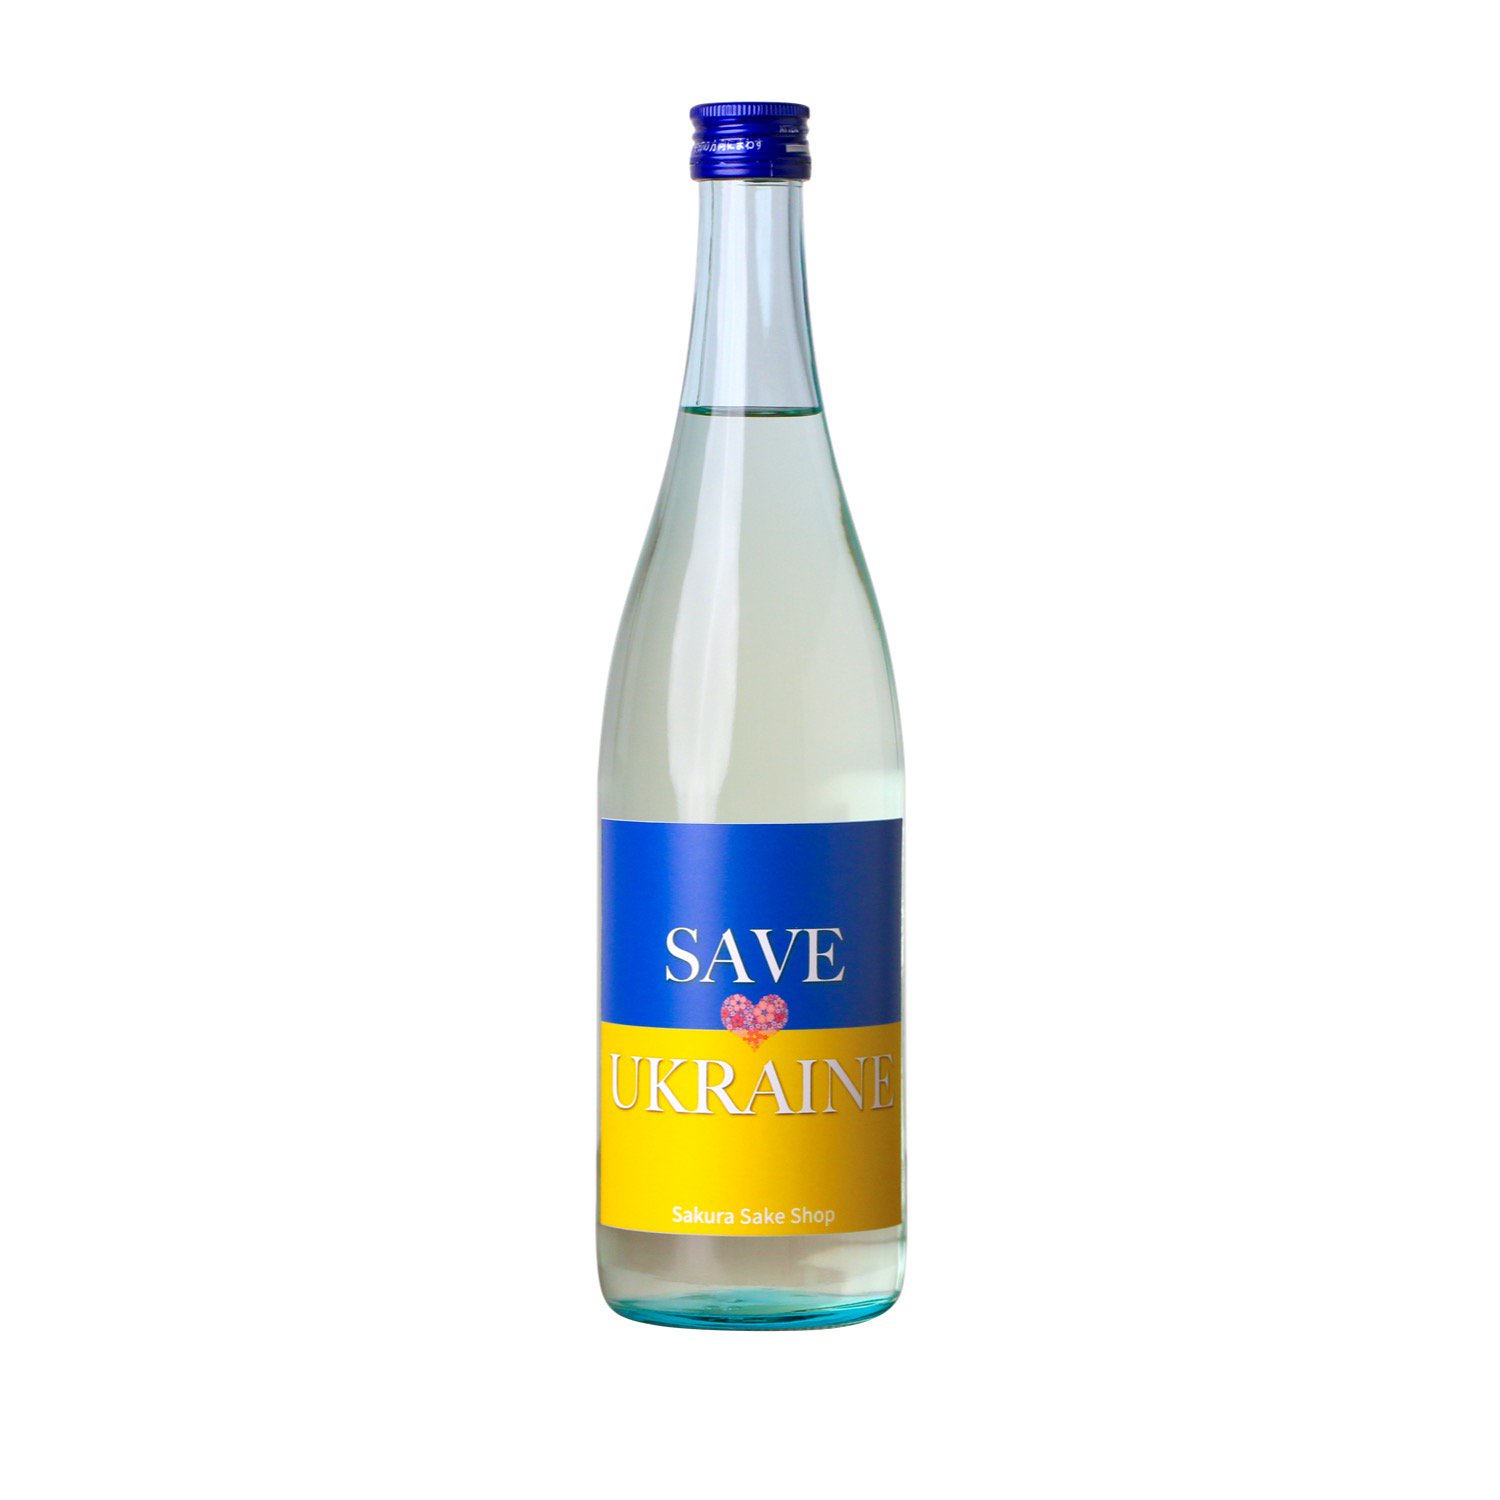 【完売】【売上金を全額寄付】ウクライナ人道支援チャリティー日本酒「SAVE UKRAINE 720ml」